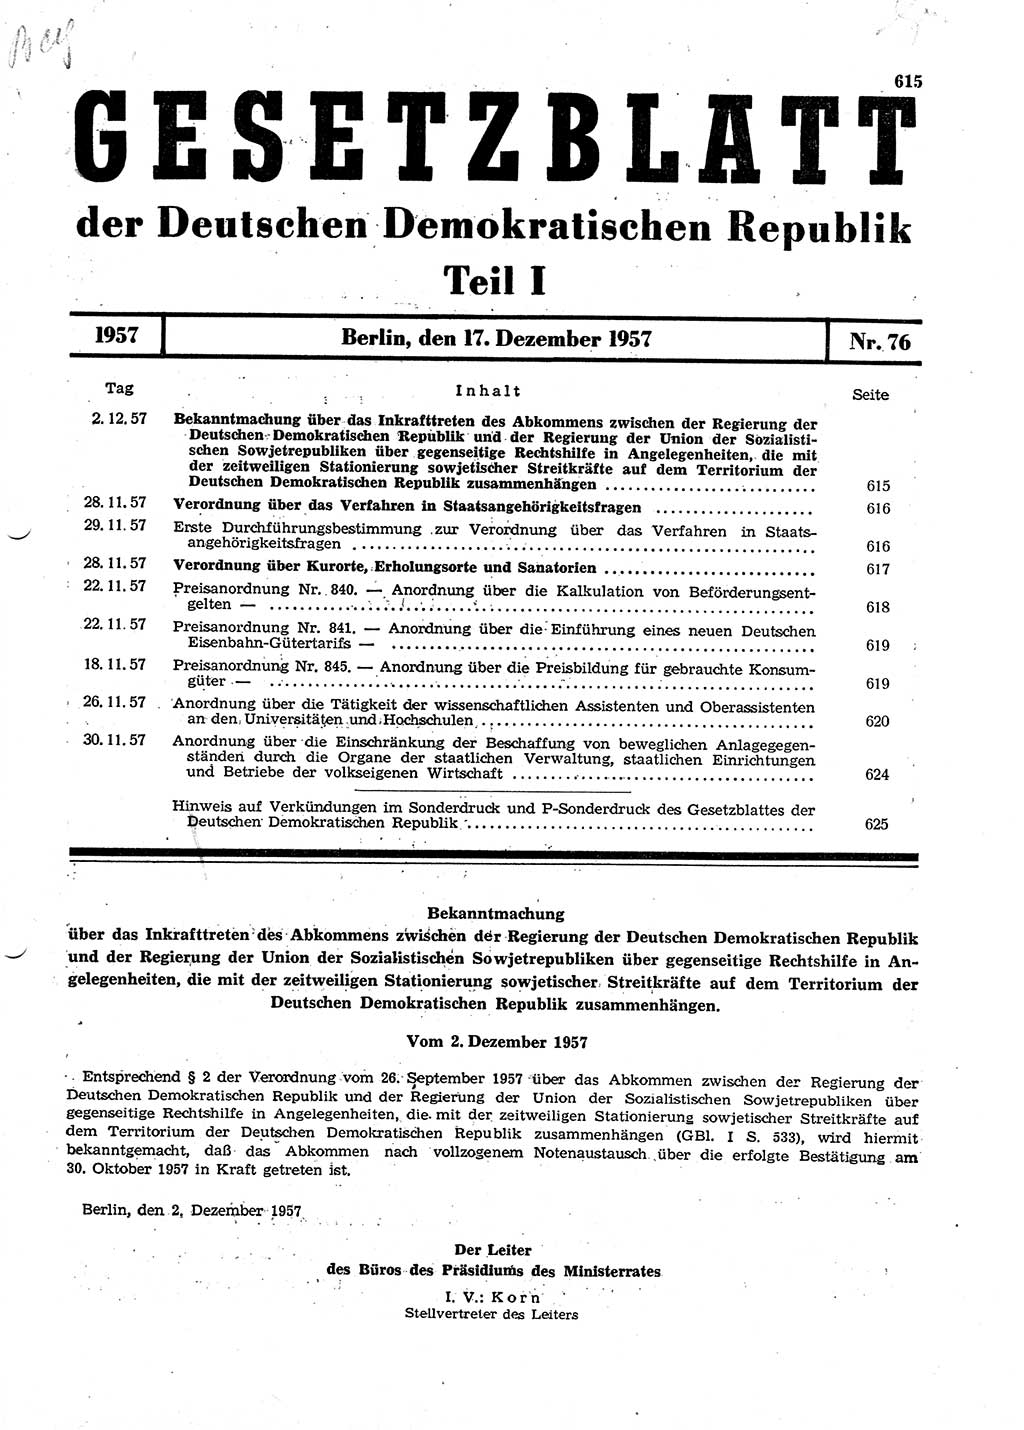 Gesetzblatt (GBl.) der Deutschen Demokratischen Republik (DDR) Teil Ⅰ 1957, Seite 615 (GBl. DDR Ⅰ 1957, S. 615)